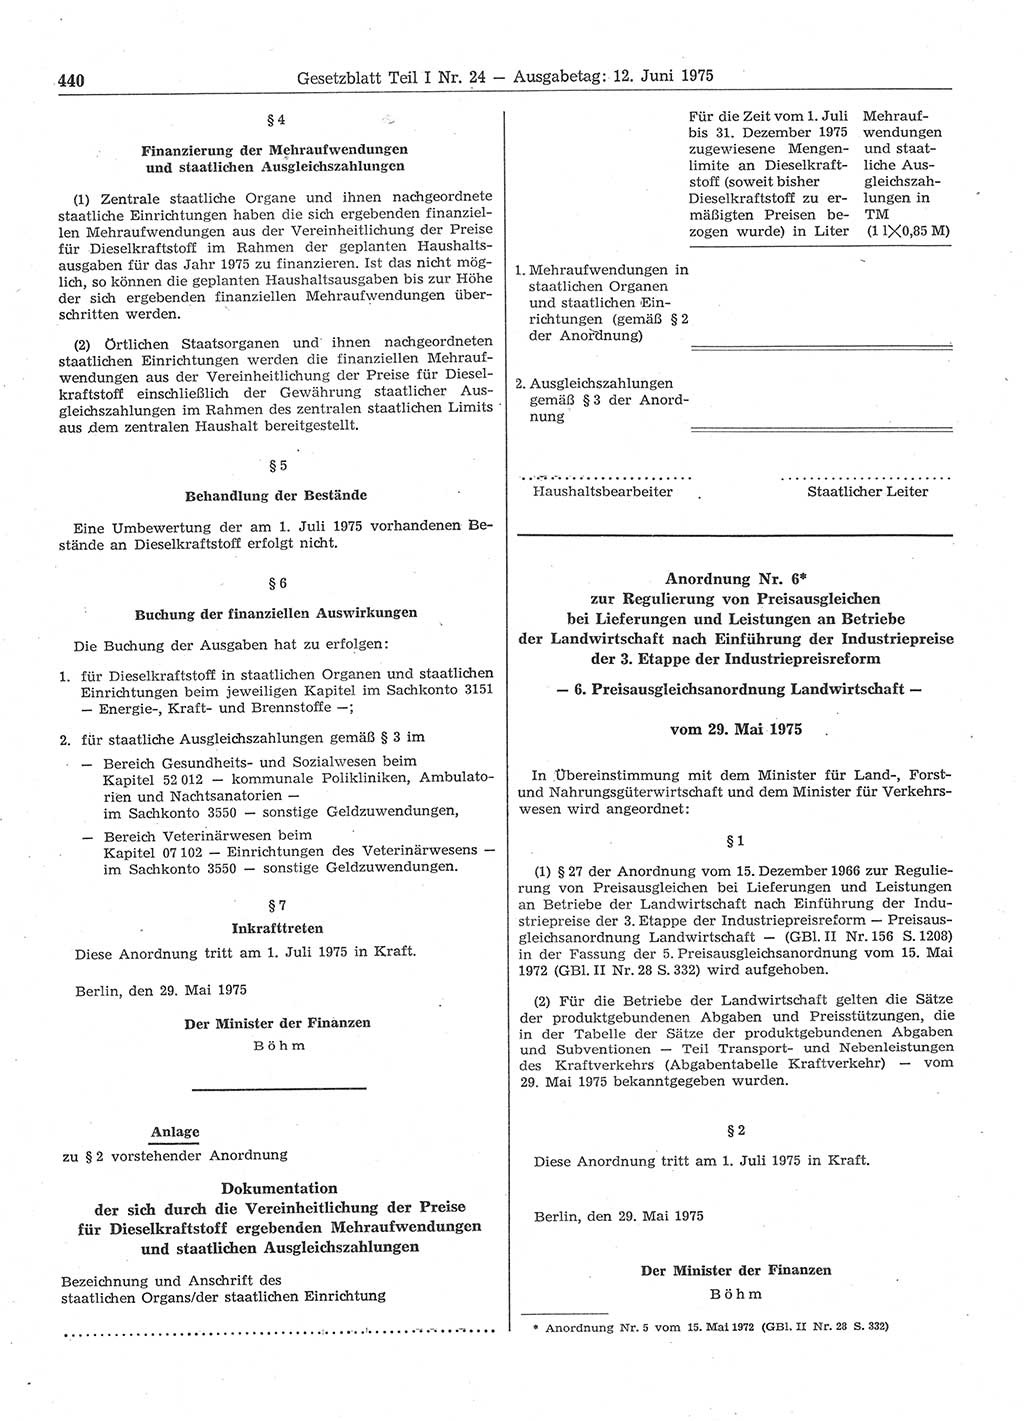 Gesetzblatt (GBl.) der Deutschen Demokratischen Republik (DDR) Teil Ⅰ 1975, Seite 440 (GBl. DDR Ⅰ 1975, S. 440)